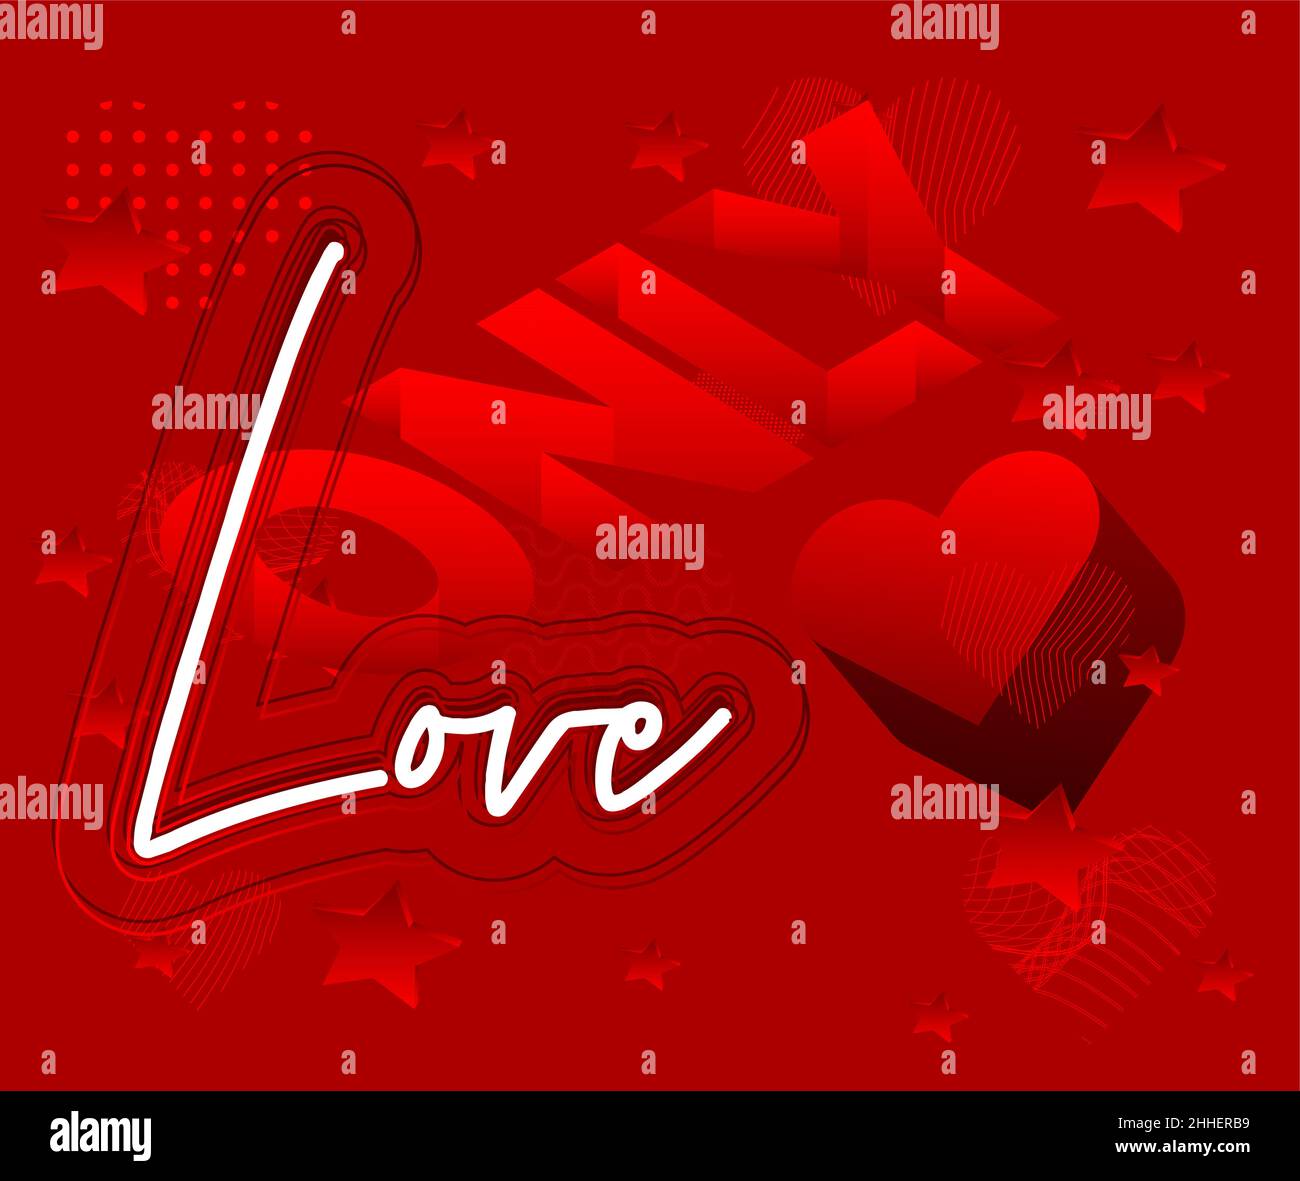 Carte De Voeux Pour La Saint Valentin Concept Love Avec Fond De Coeur Affiche Romantique Rouge Mariage Invitation Courte Citation Romantique Image Vectorielle Stock Alamy